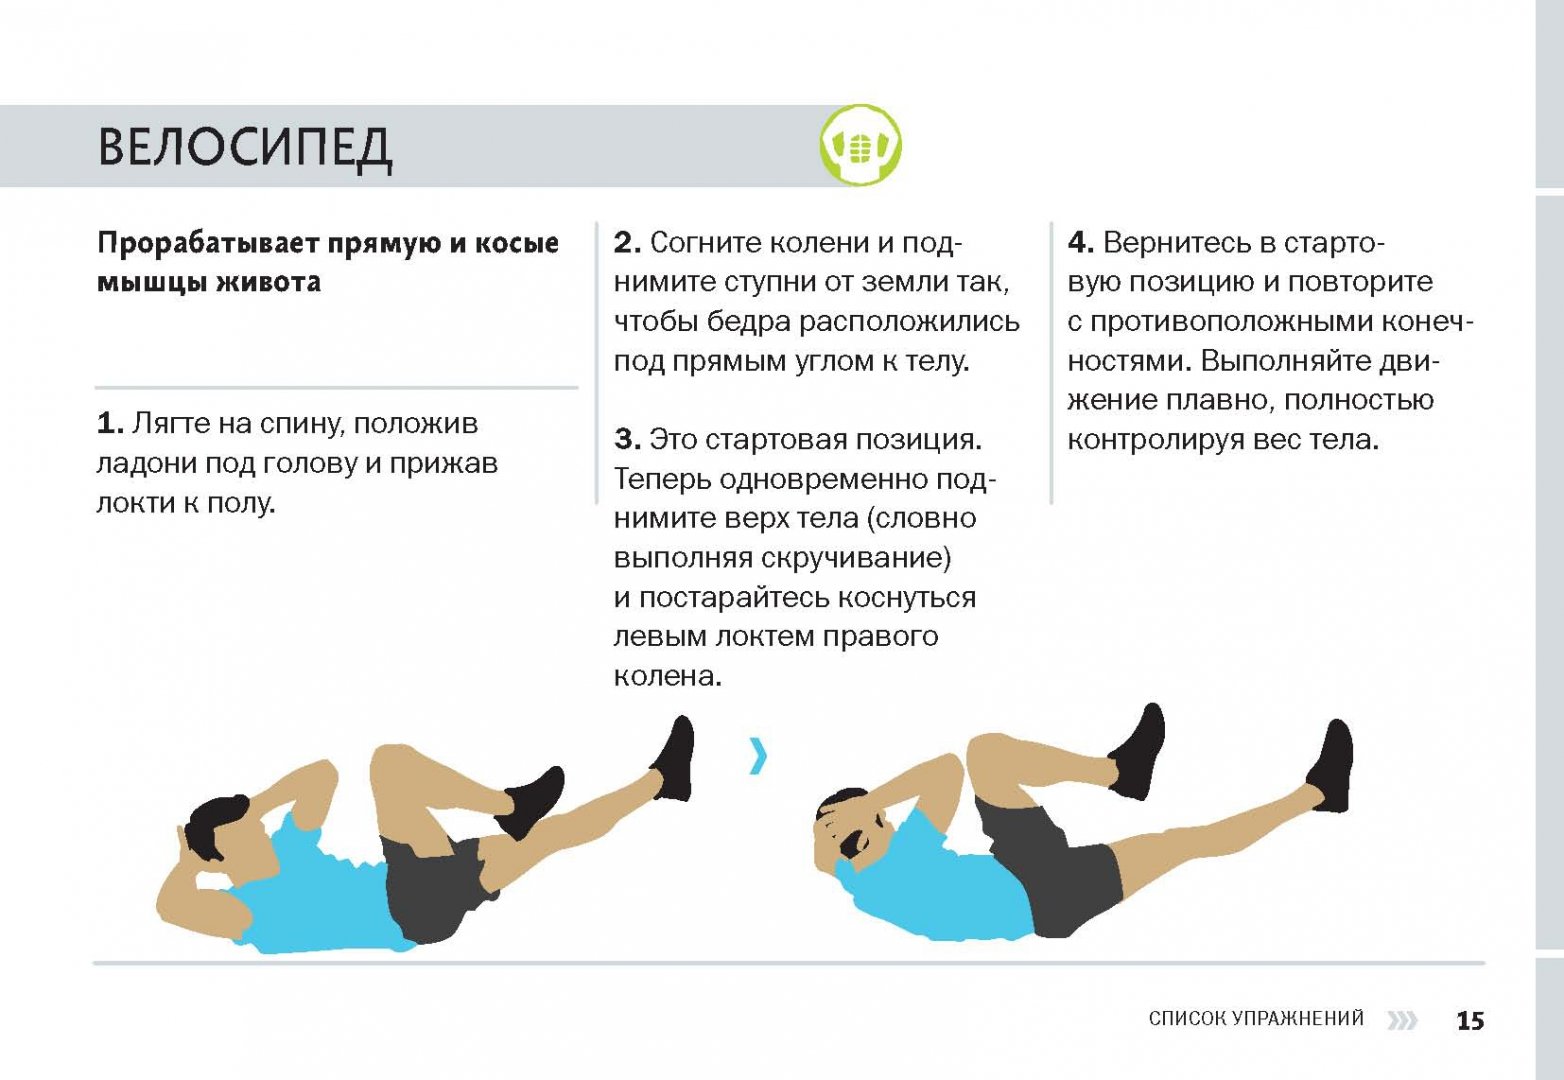 Иллюстрация 9 из 29 для 7 минут на фитнес. 50 интервальных тренировок для занятых людей - Бретт Клика | Лабиринт - книги. Источник: Лабиринт